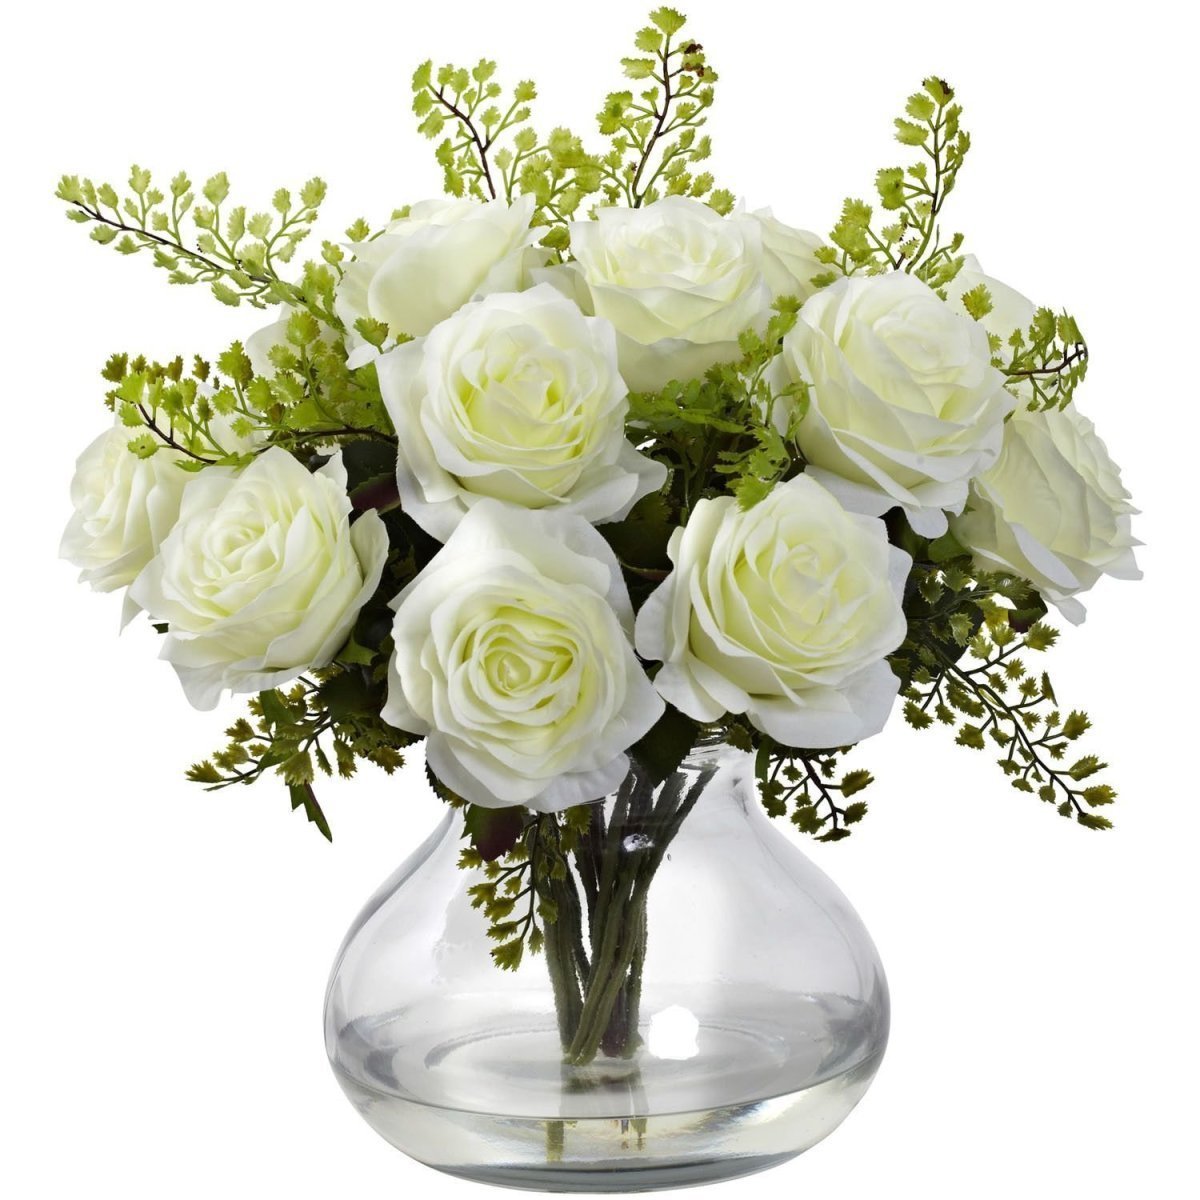 Красивый букет цветов в вазе на прозрачном фоне фото